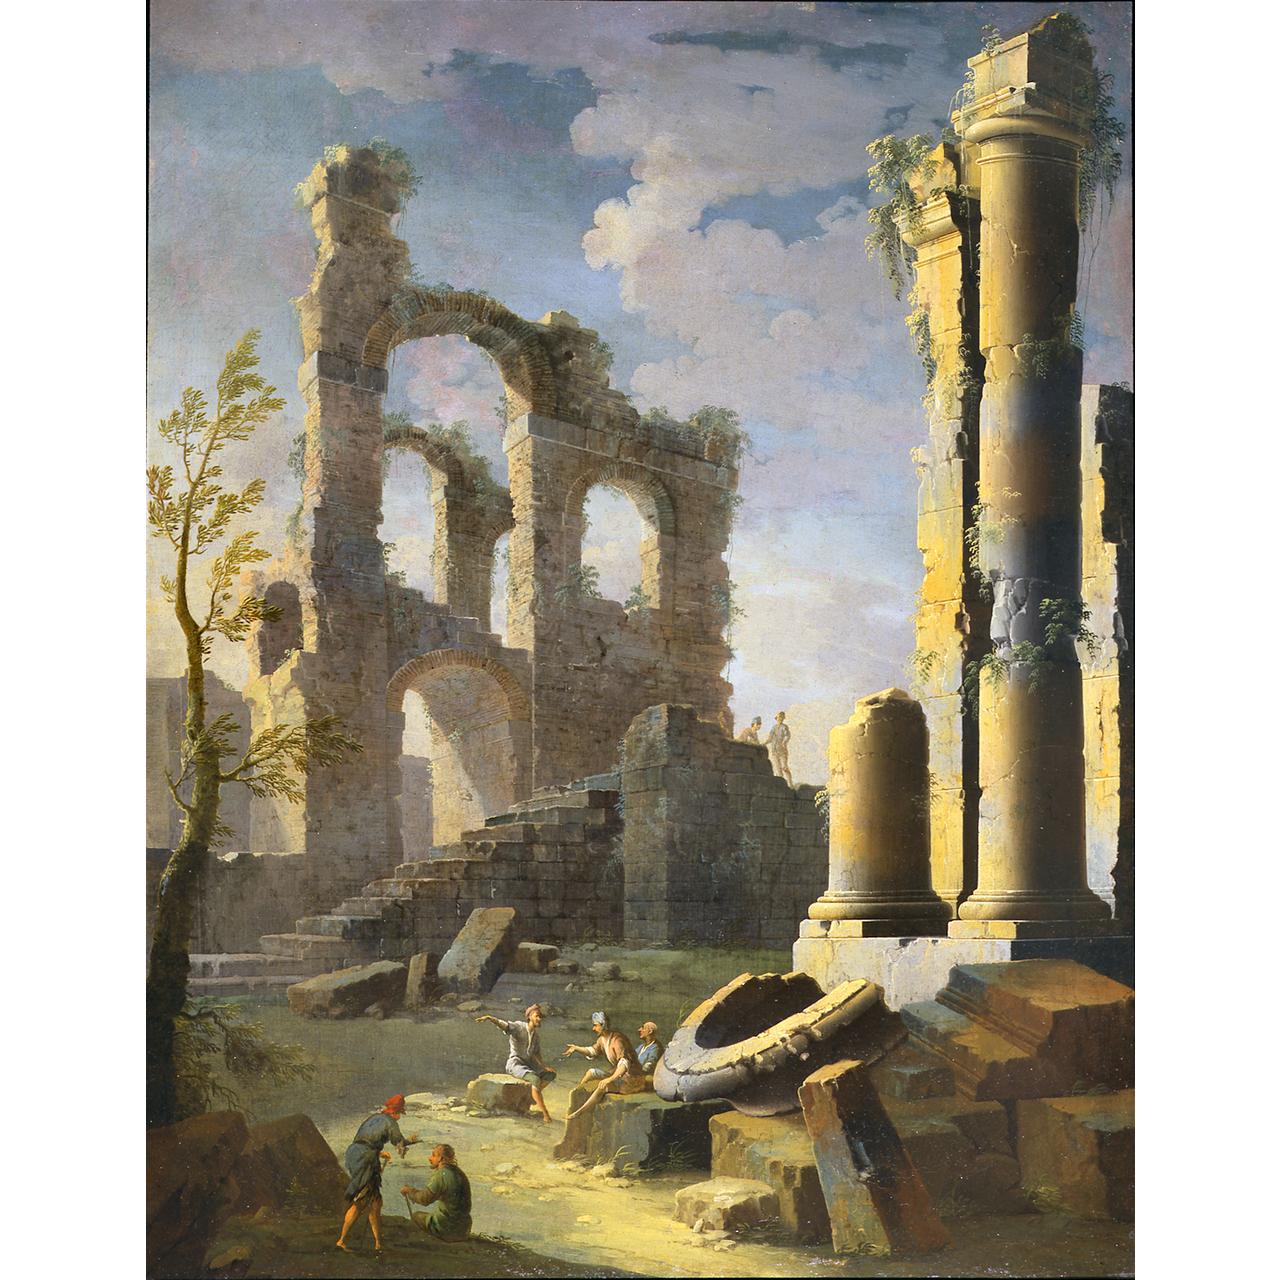 Dipinto: Capriccio con rovine antiche e figure, crepuscolo (I)